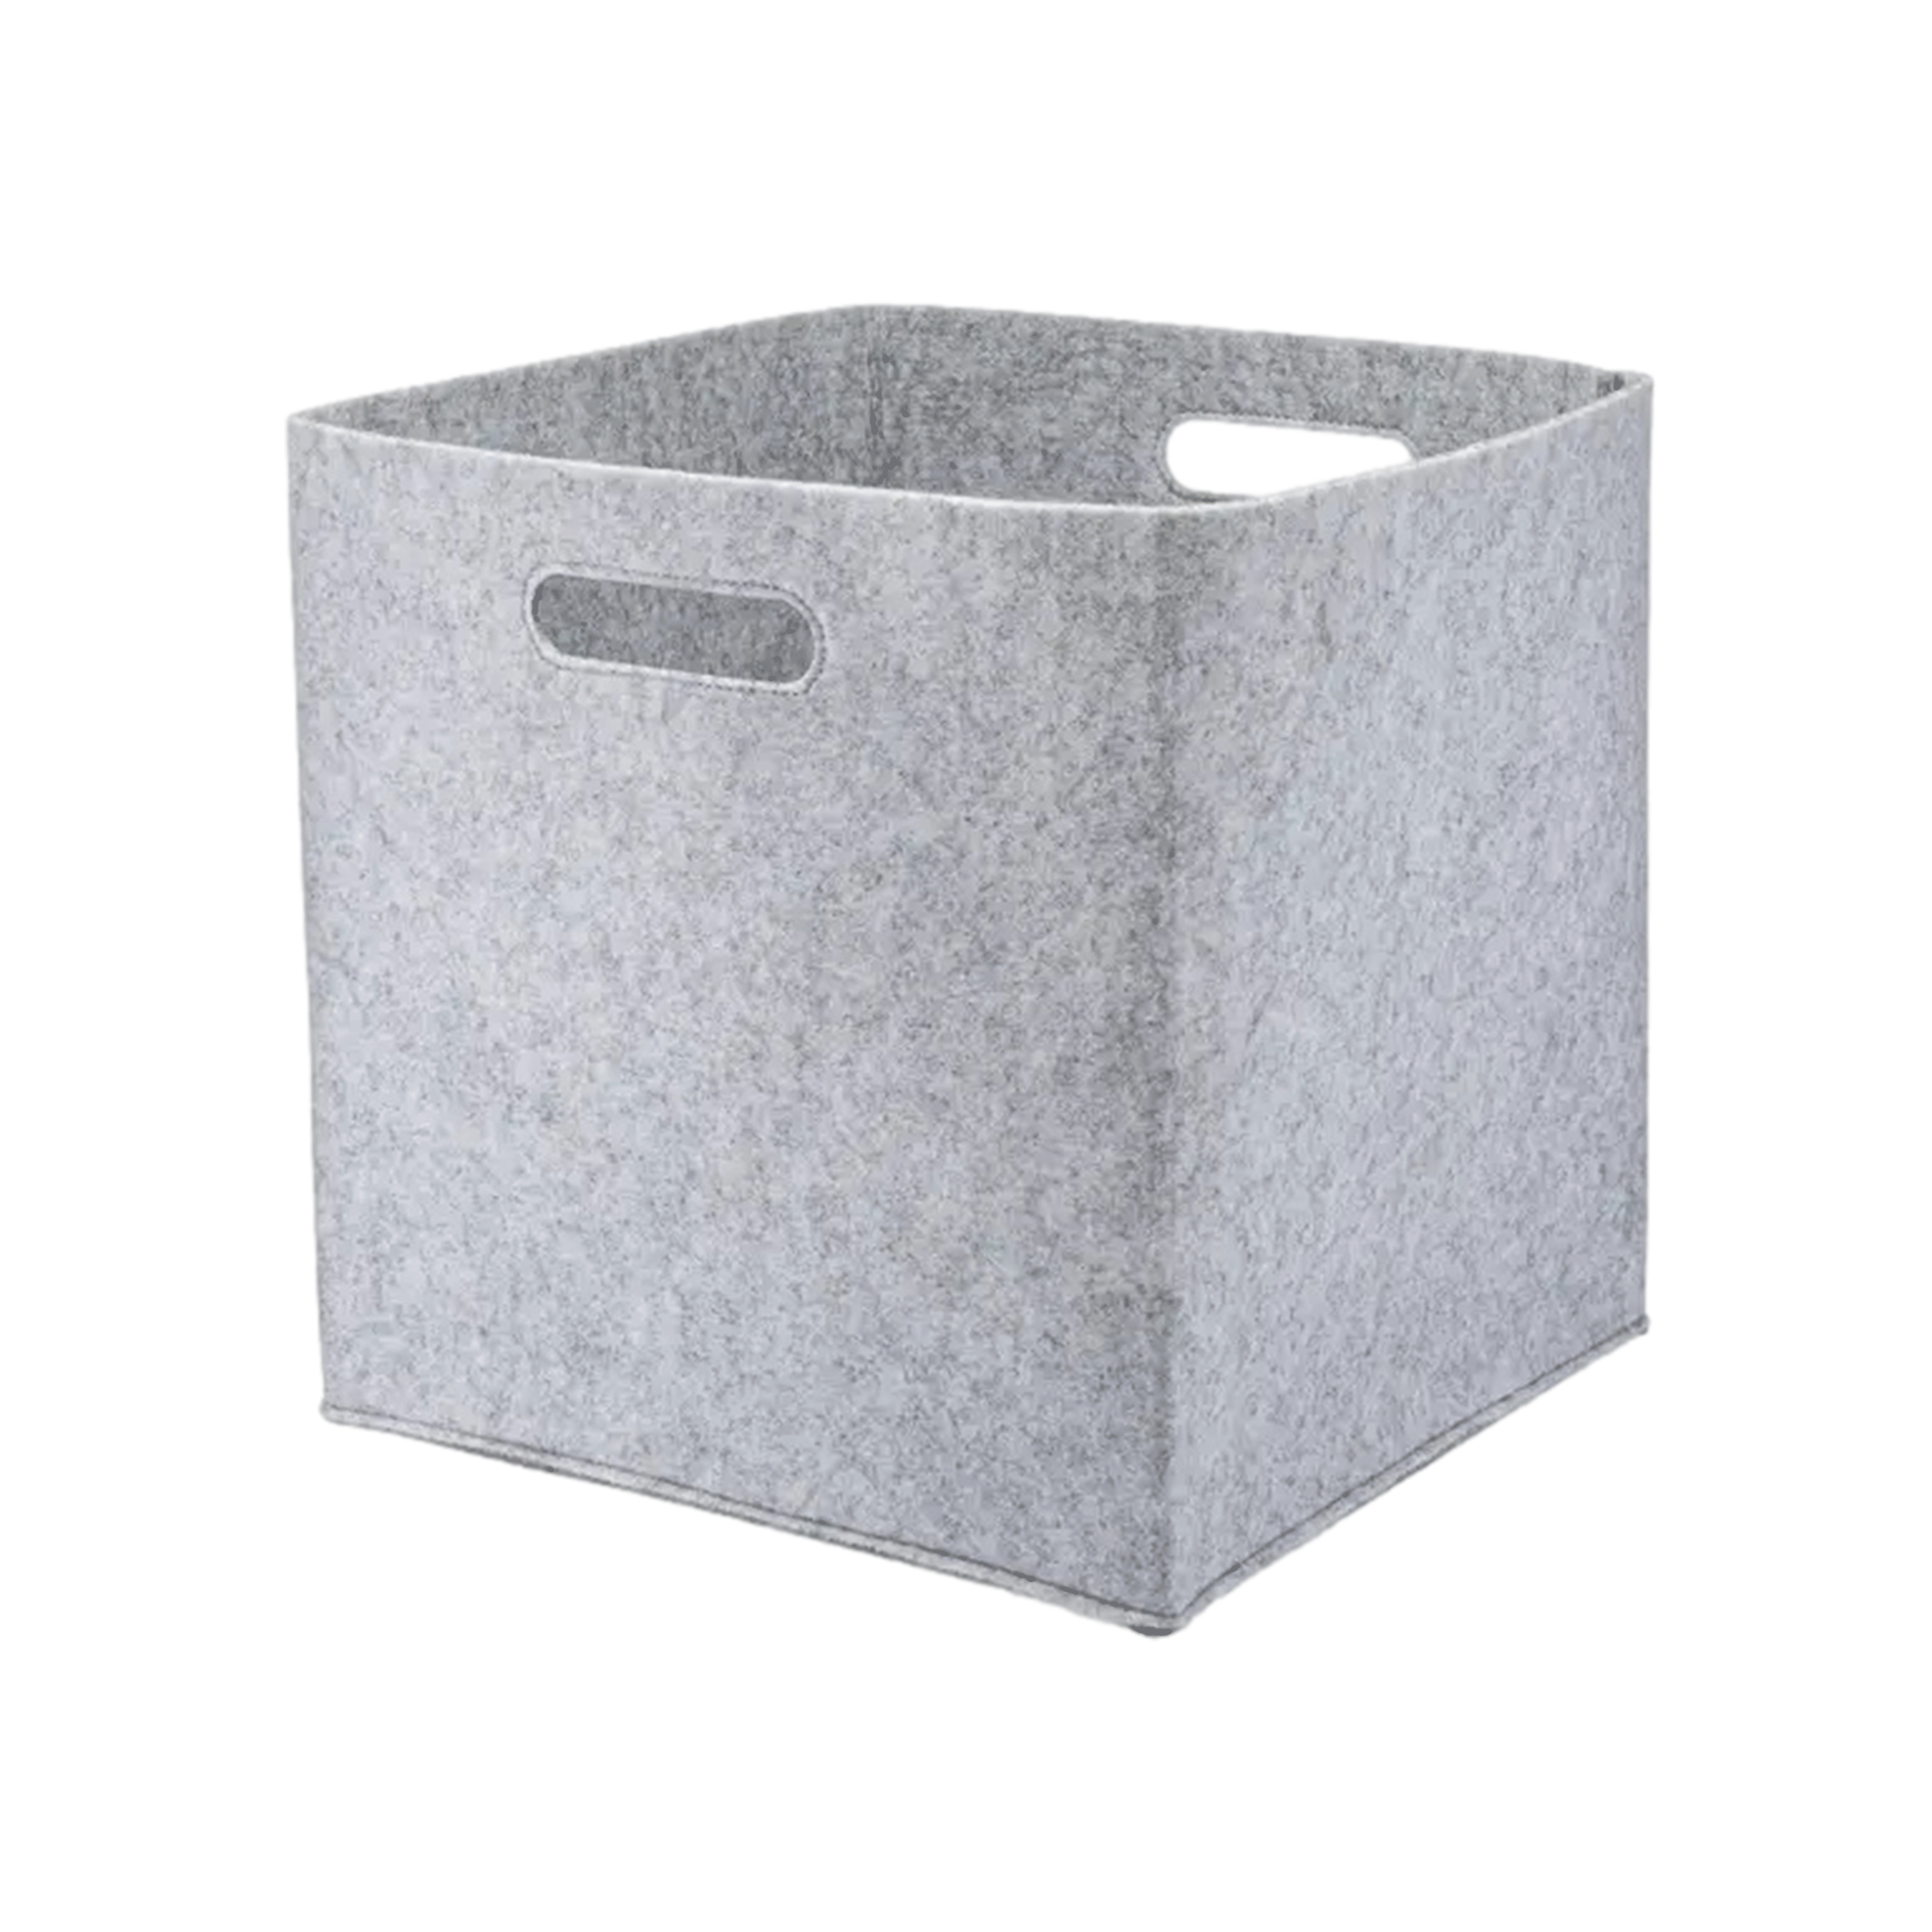 Felt Cube Storage Bin in Gray